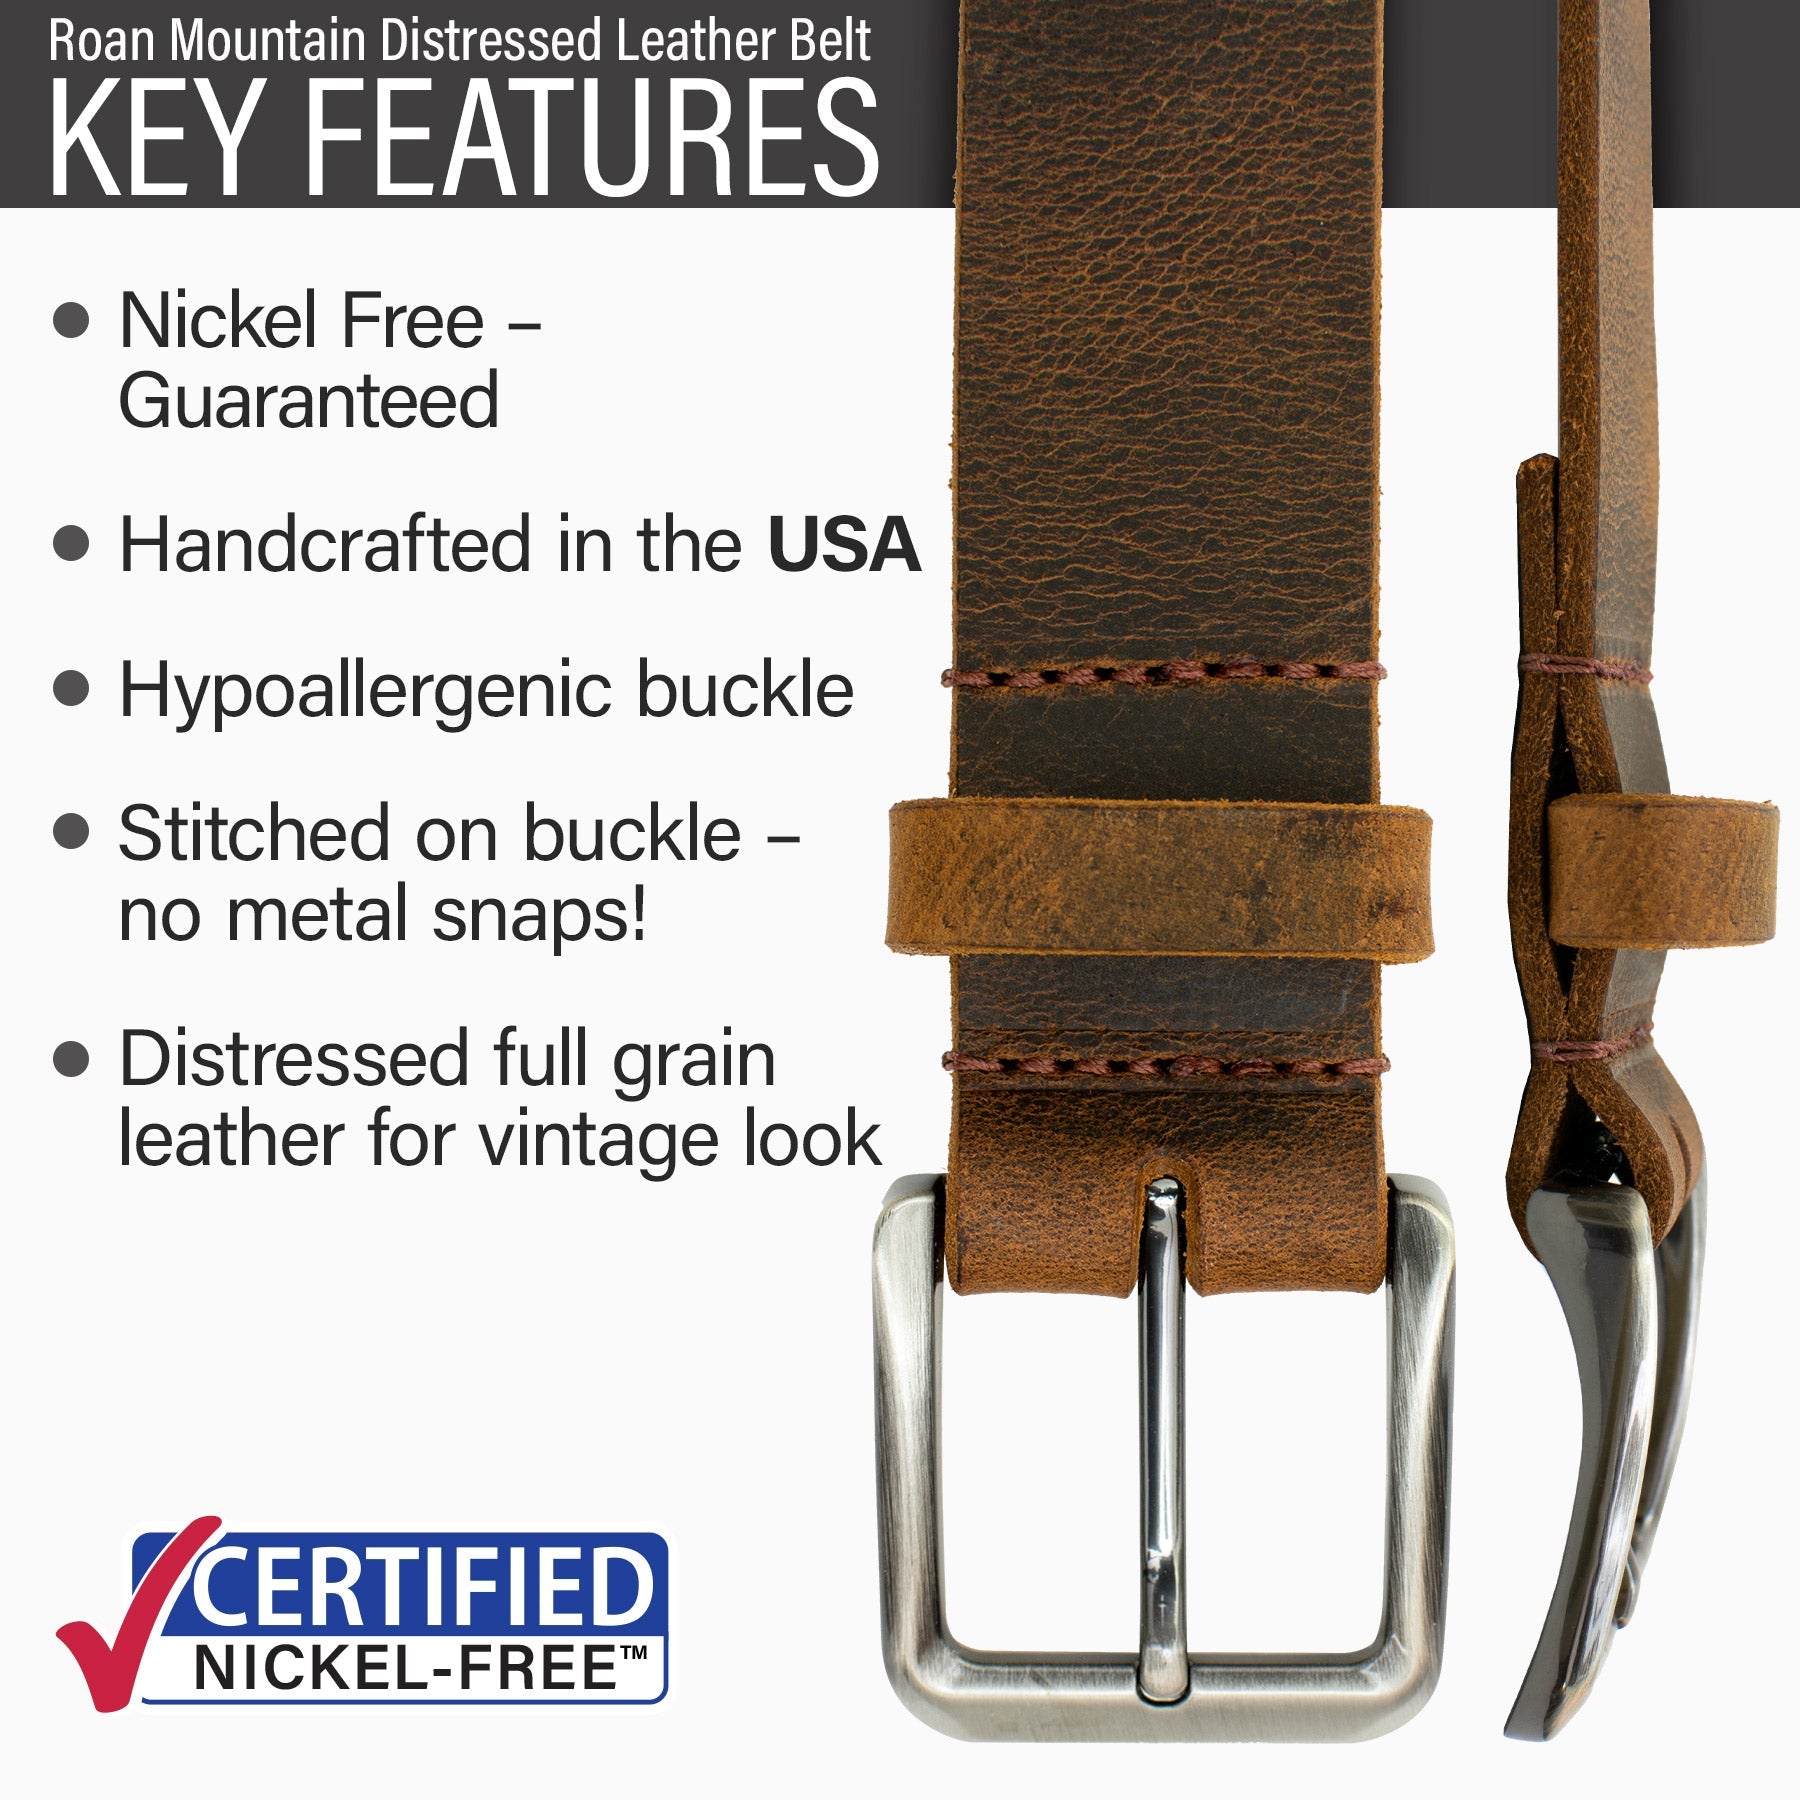 Roan Mountain Distressed Leather Belt, Nickel Free Belt